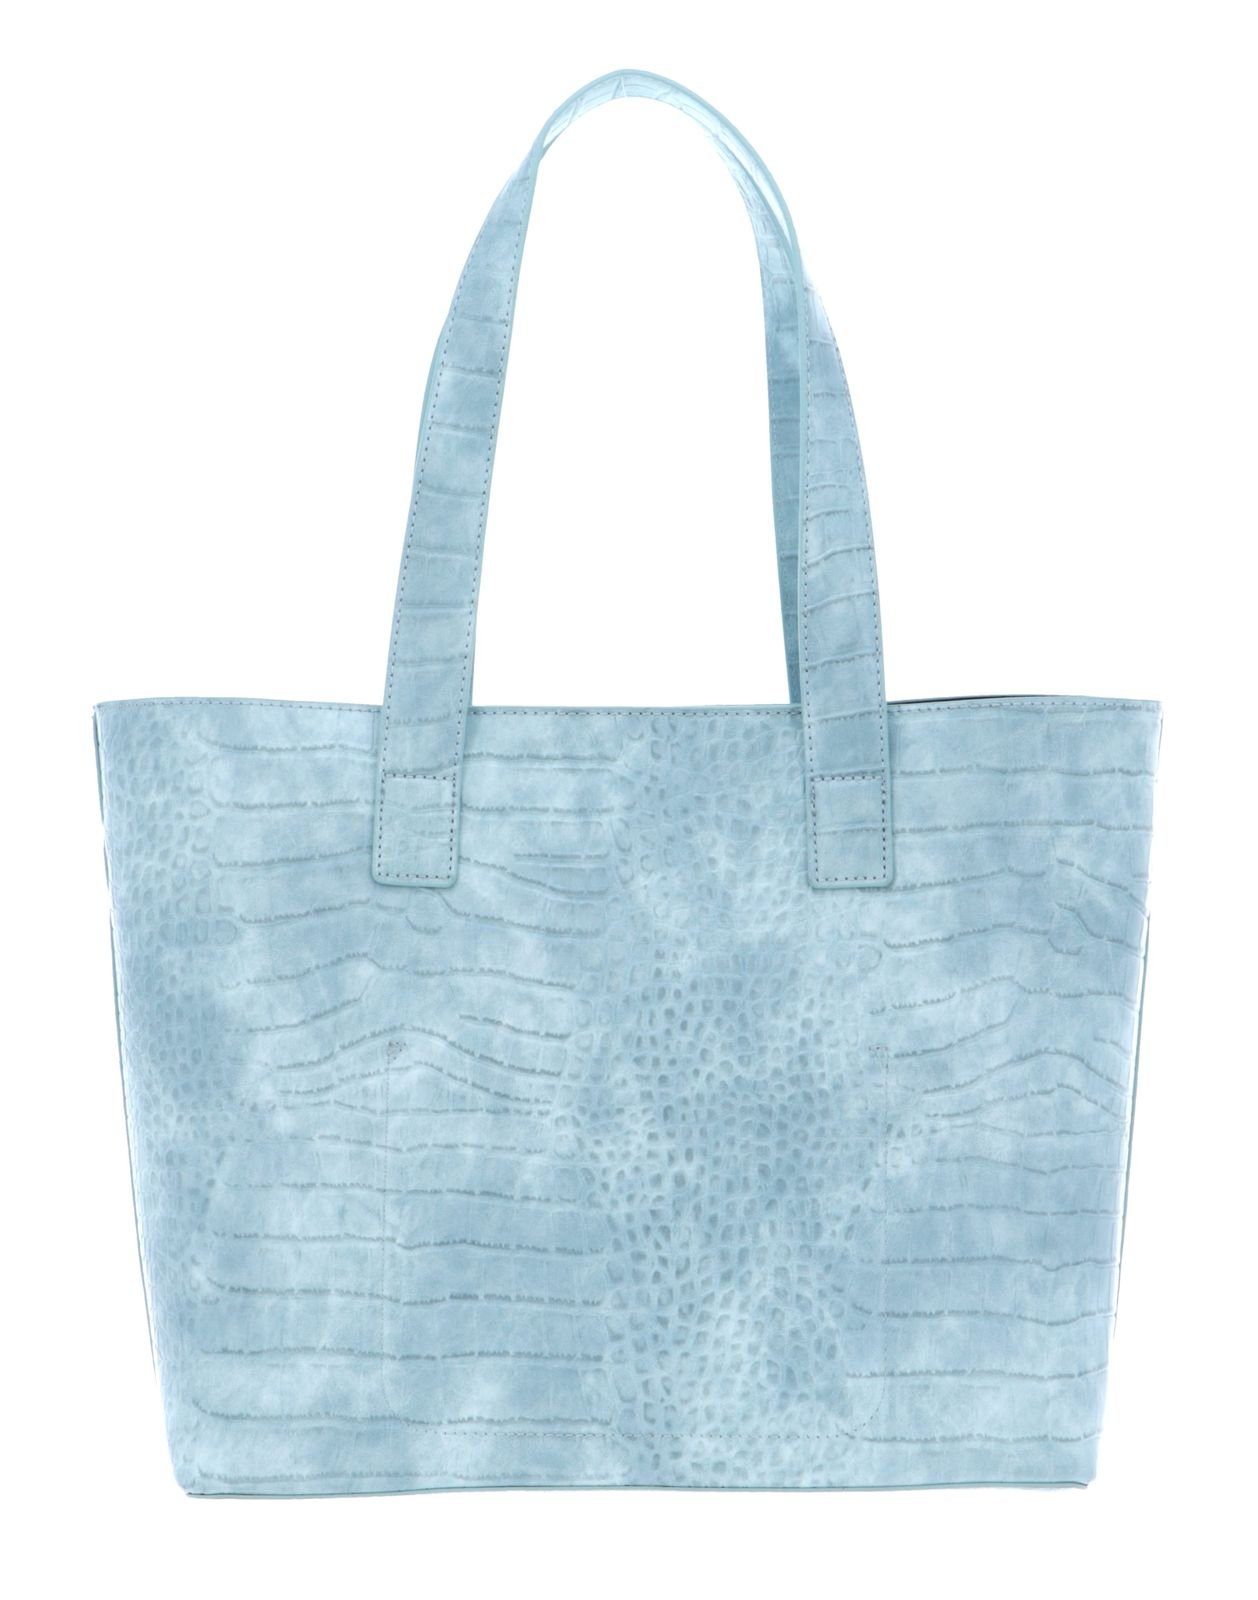 Azzurro Anastasia VALENTINO Shopper BAGS